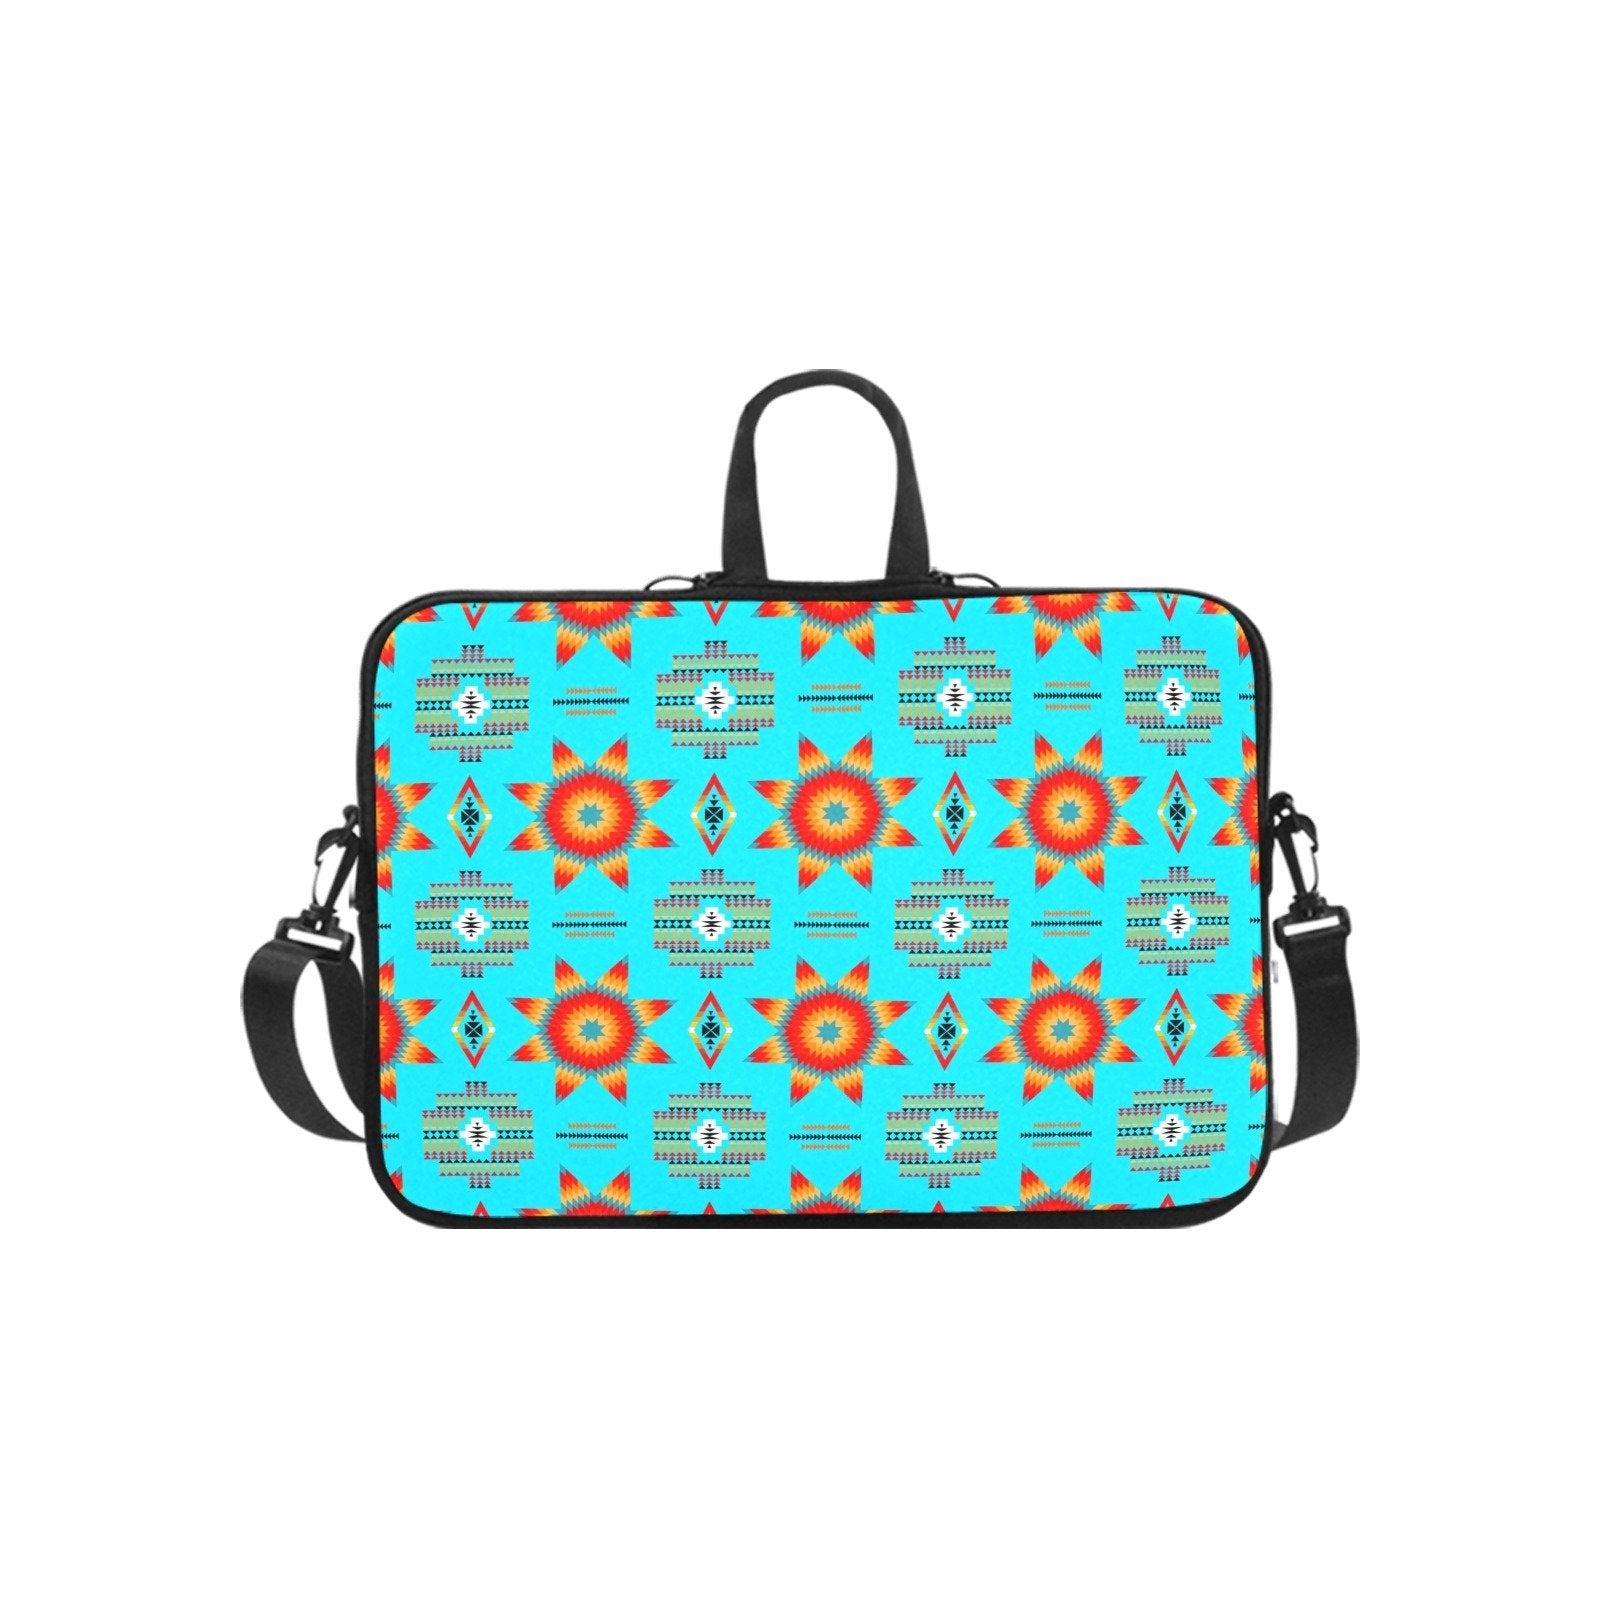 Rising Star Harvest Moon Laptop Handbags 17" bag e-joyer 